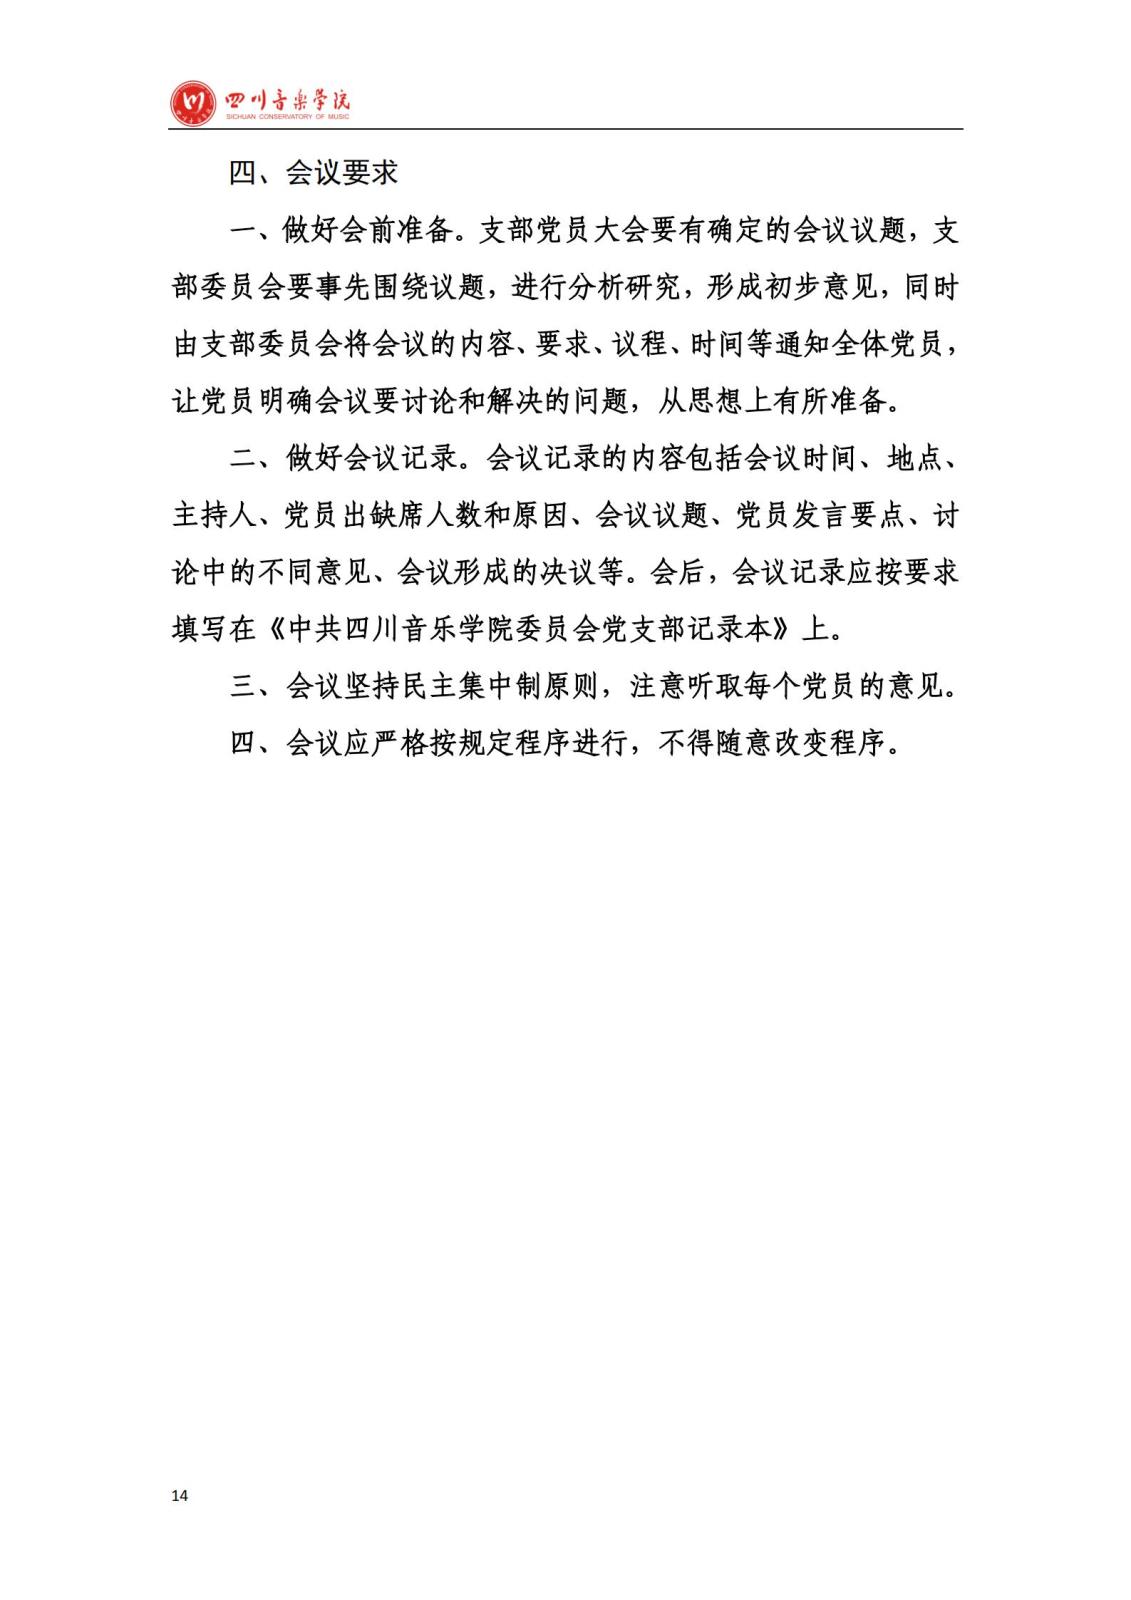 bat365中文官方网站学院办公室规章制度汇编_16.jpg